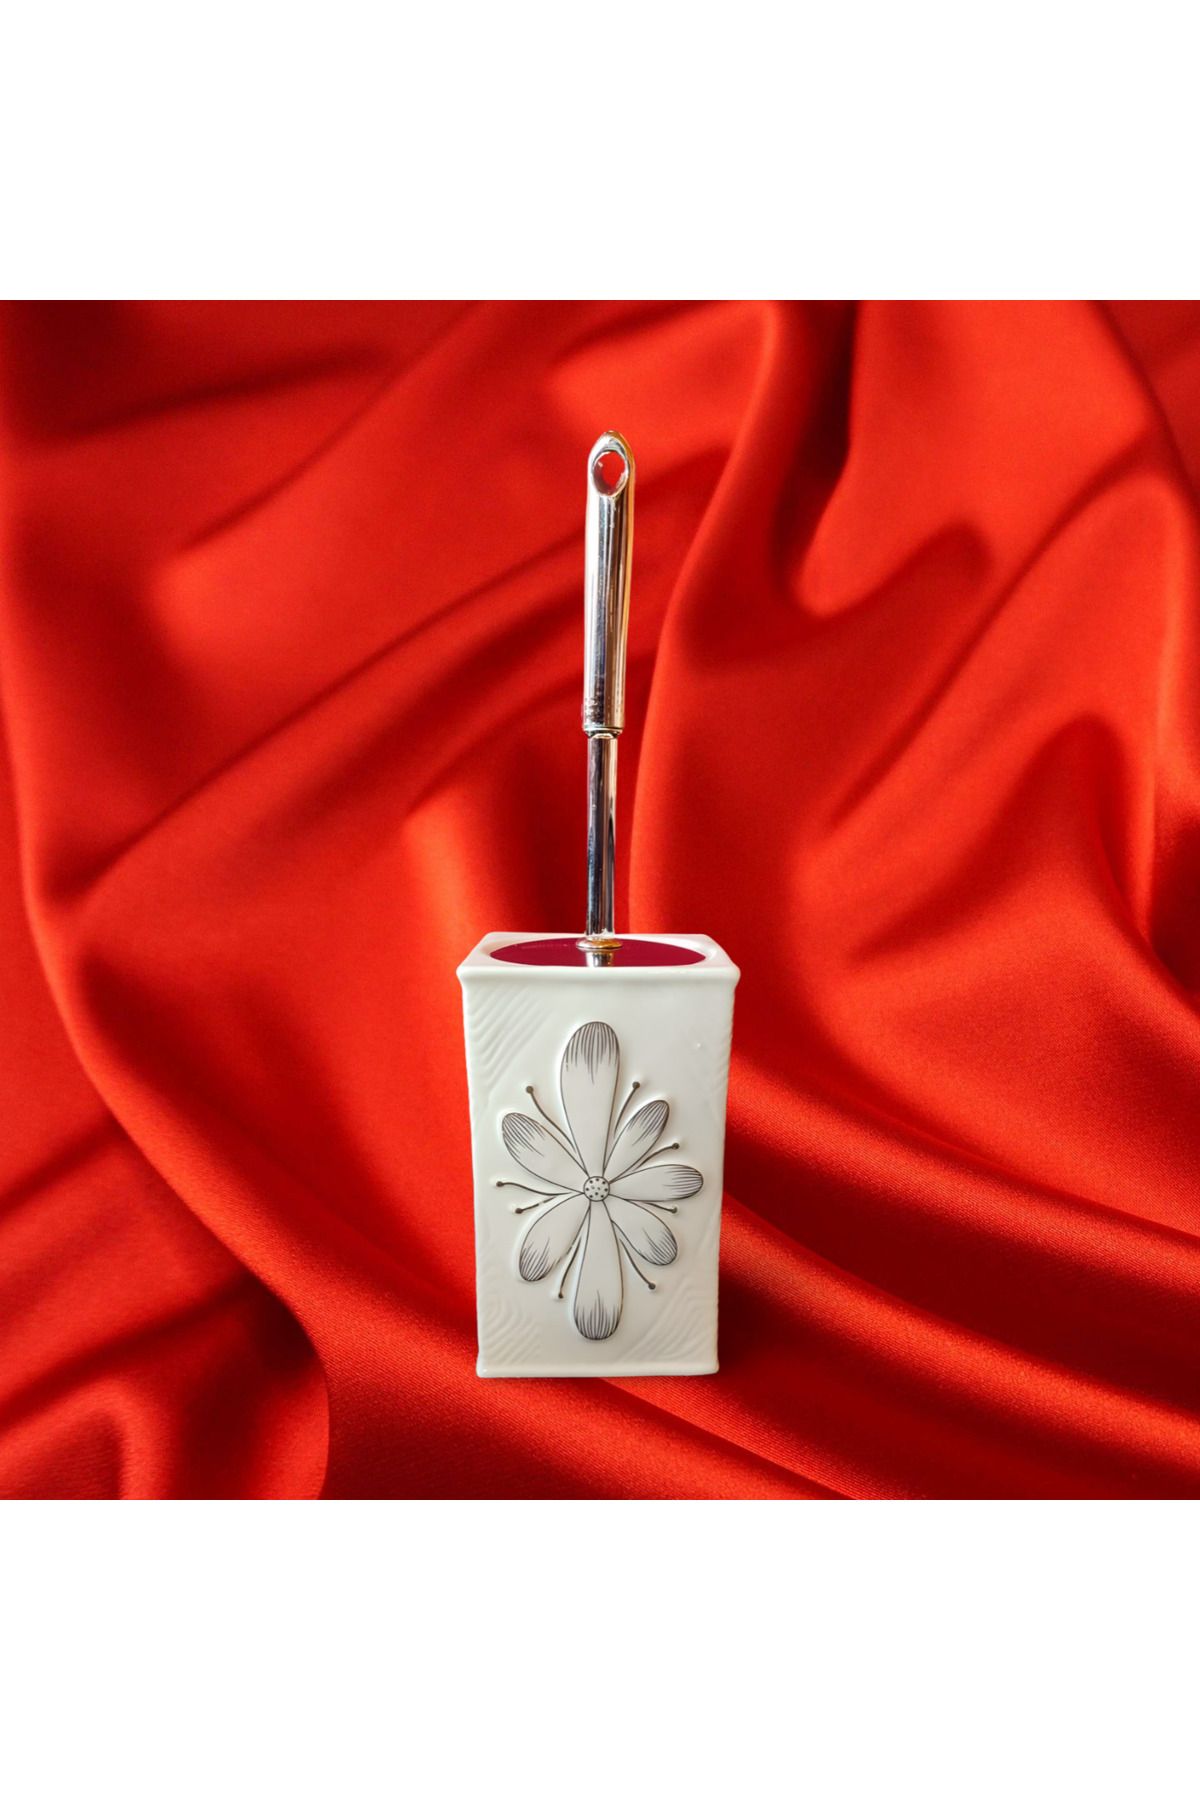 MADAME LUDA El Işlemeli Kabartma Çiçek Desenli Metal Sap Kapaklı 1. Sınıf Porselen Klozet Fırçası.